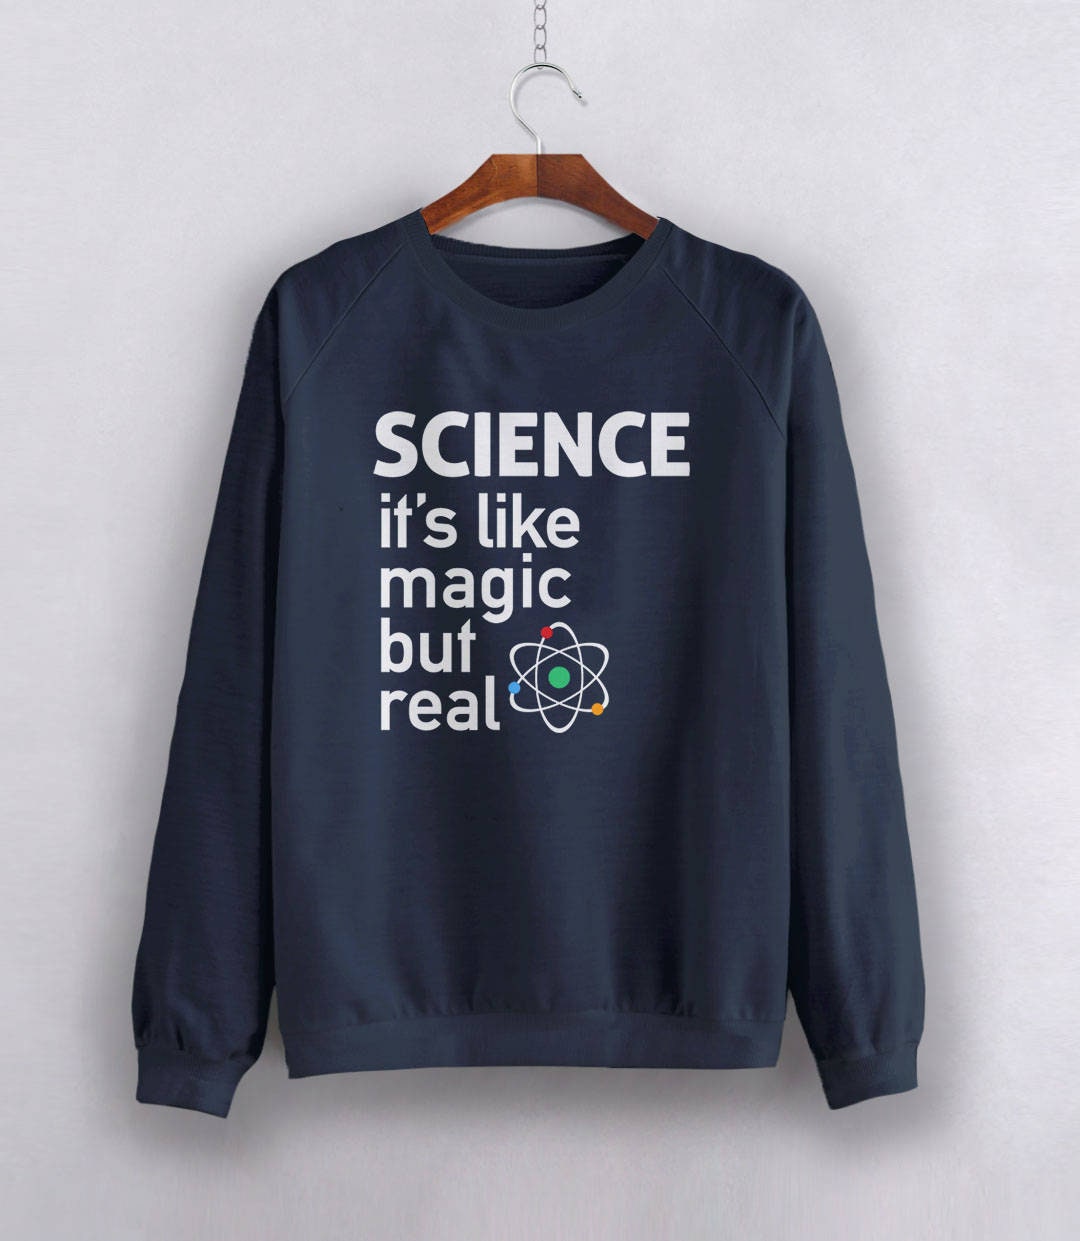 Science Sweatshirt, Black Unisex Hoodie S by BootsTees